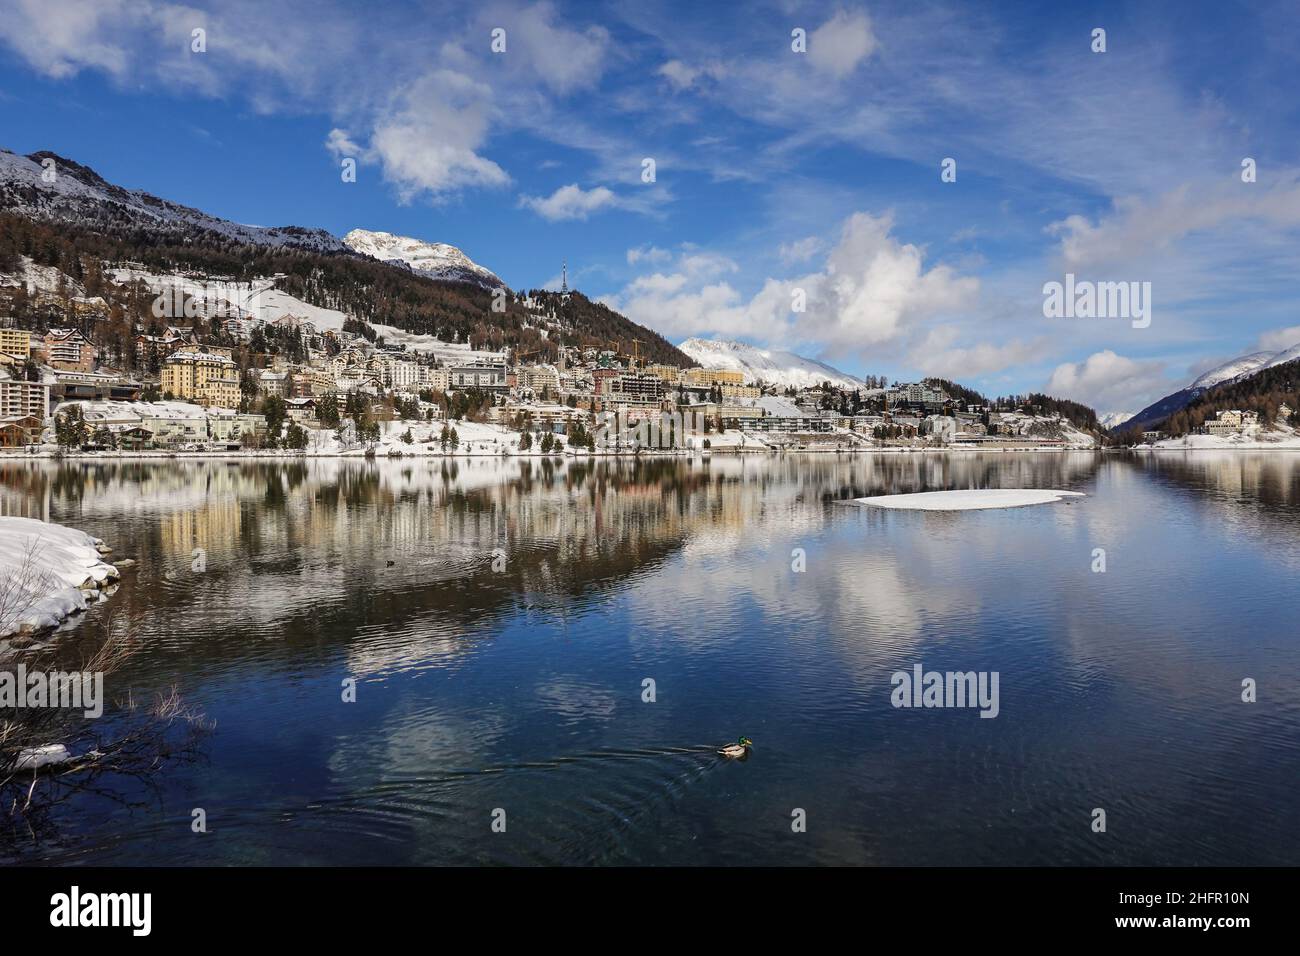 Riflesso drammatico del famoso villaggio di Saint Moritz nel lago in una giornata invernale soleggiata nel Cantone Graubunden, nelle alpi della Svizzera Foto Stock